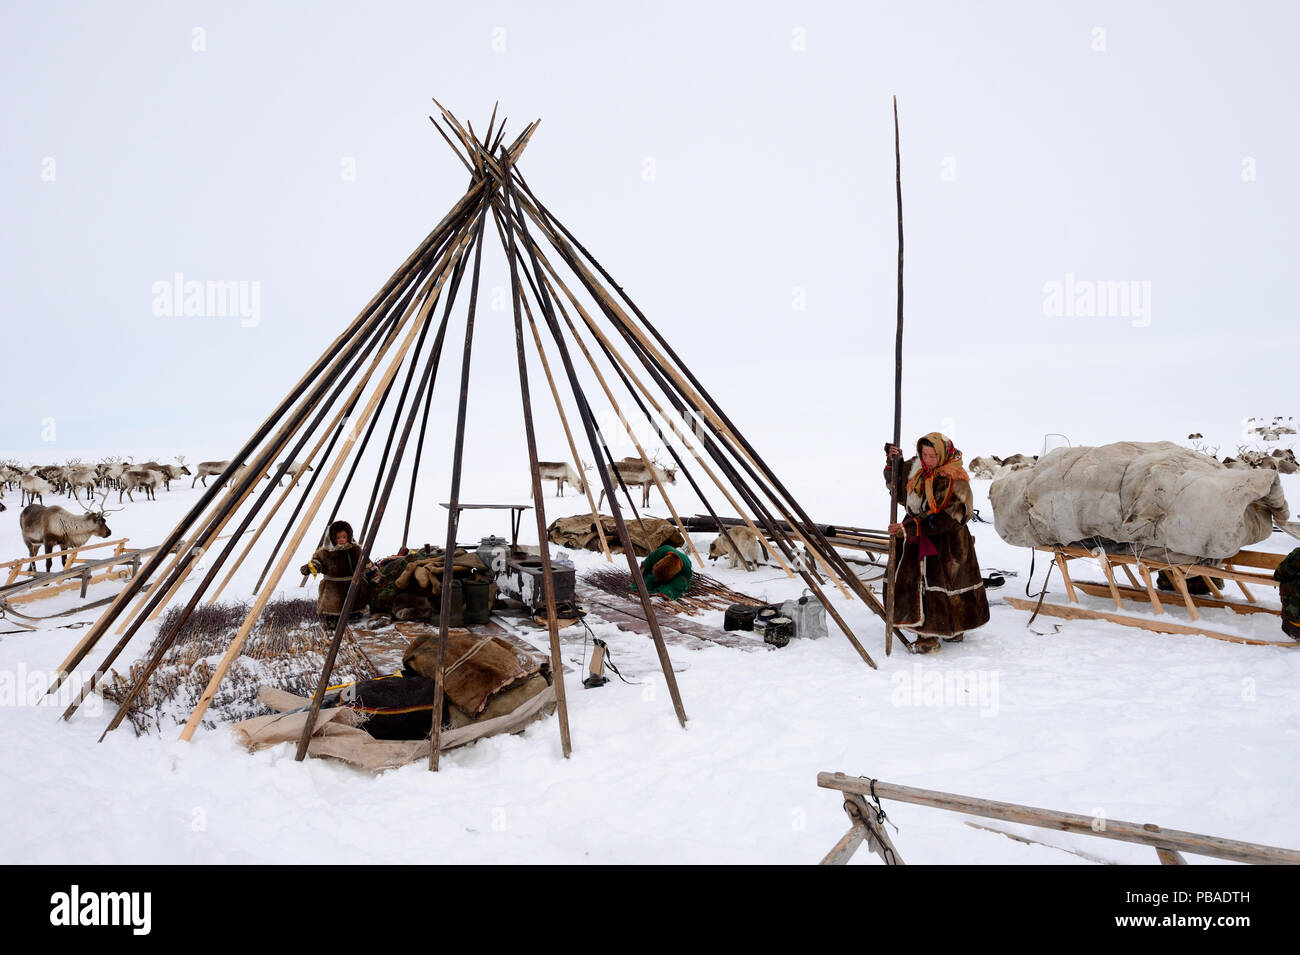 Les éleveurs Nenet érigeant tente sur la toundra. Yar-Sale, district du nord-ouest de Yamal, Sibérie, Russie. Avril 2016. Banque D'Images